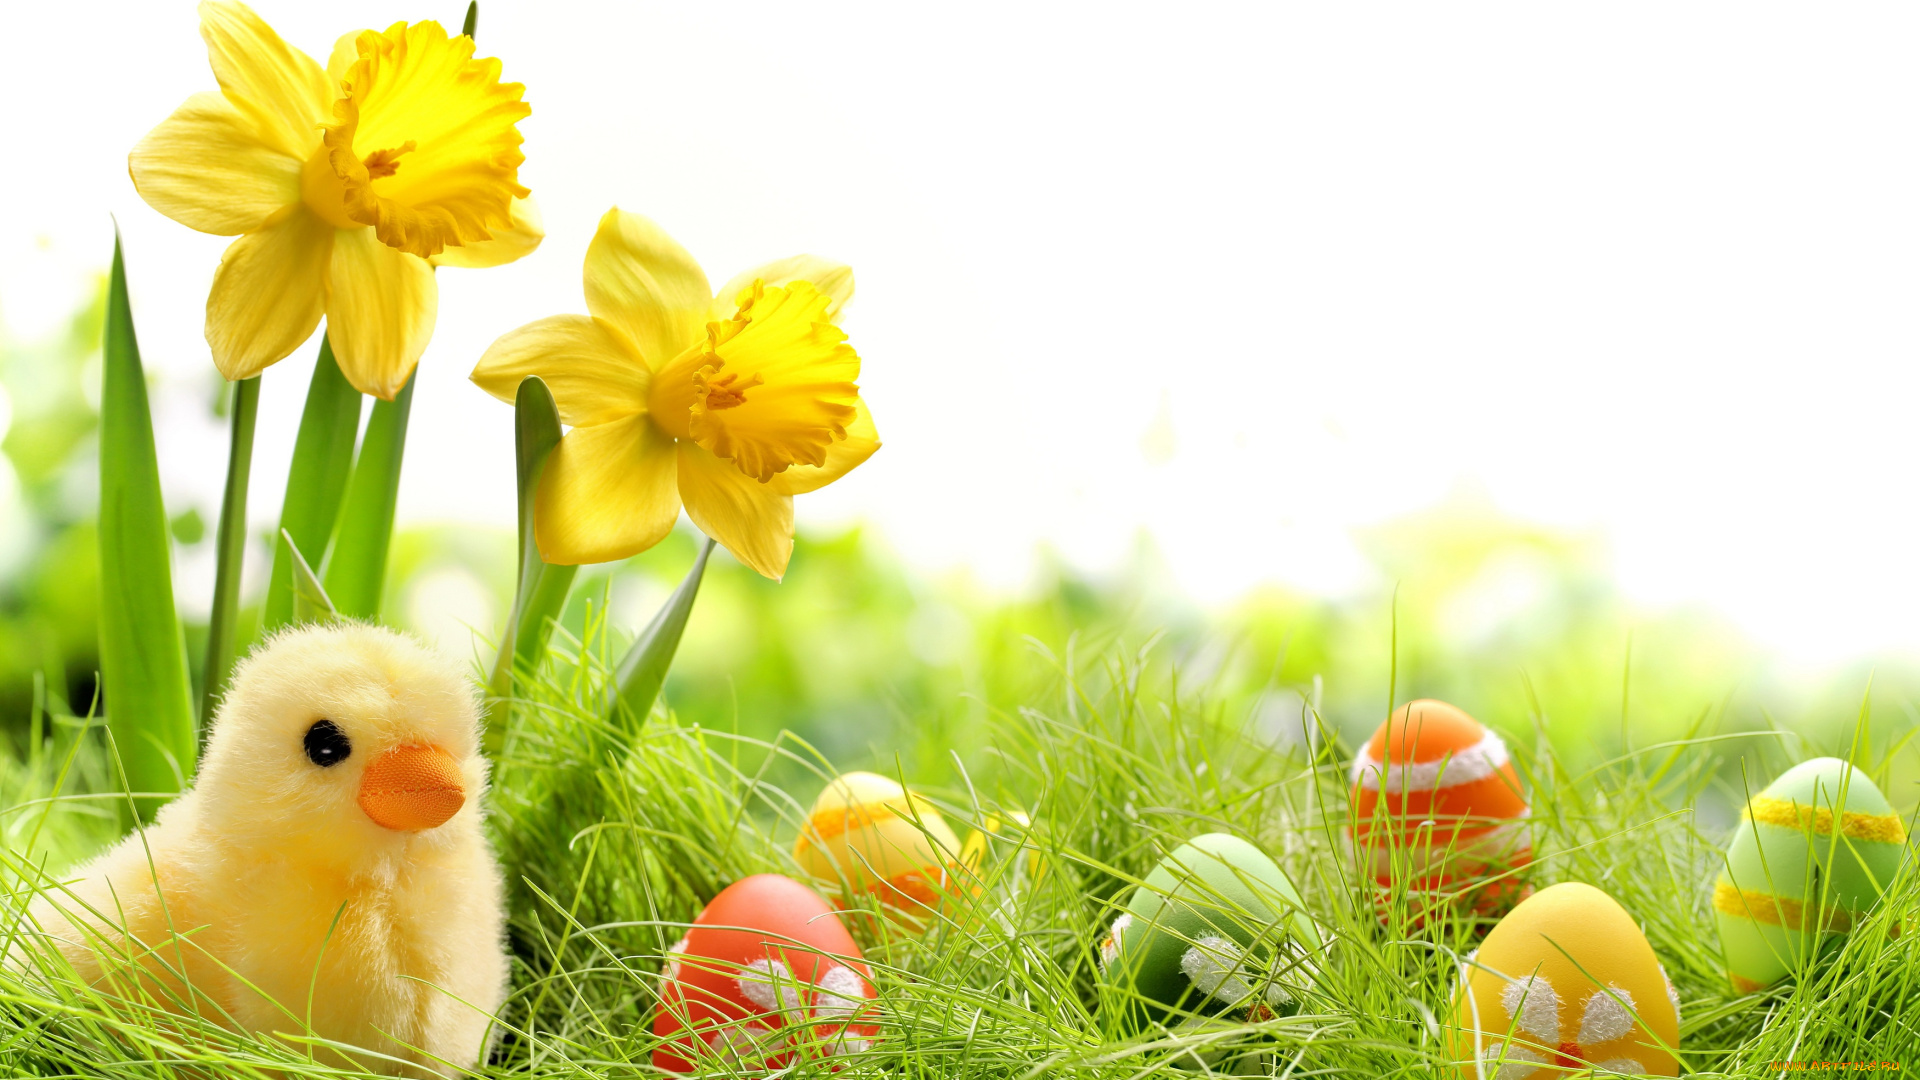 праздничные, пасха, трава, крашеные, нарциссы, spring, яйца, chik, springer, easter, grass, цветы, весна, colorful, daffodils, flowers, eggs